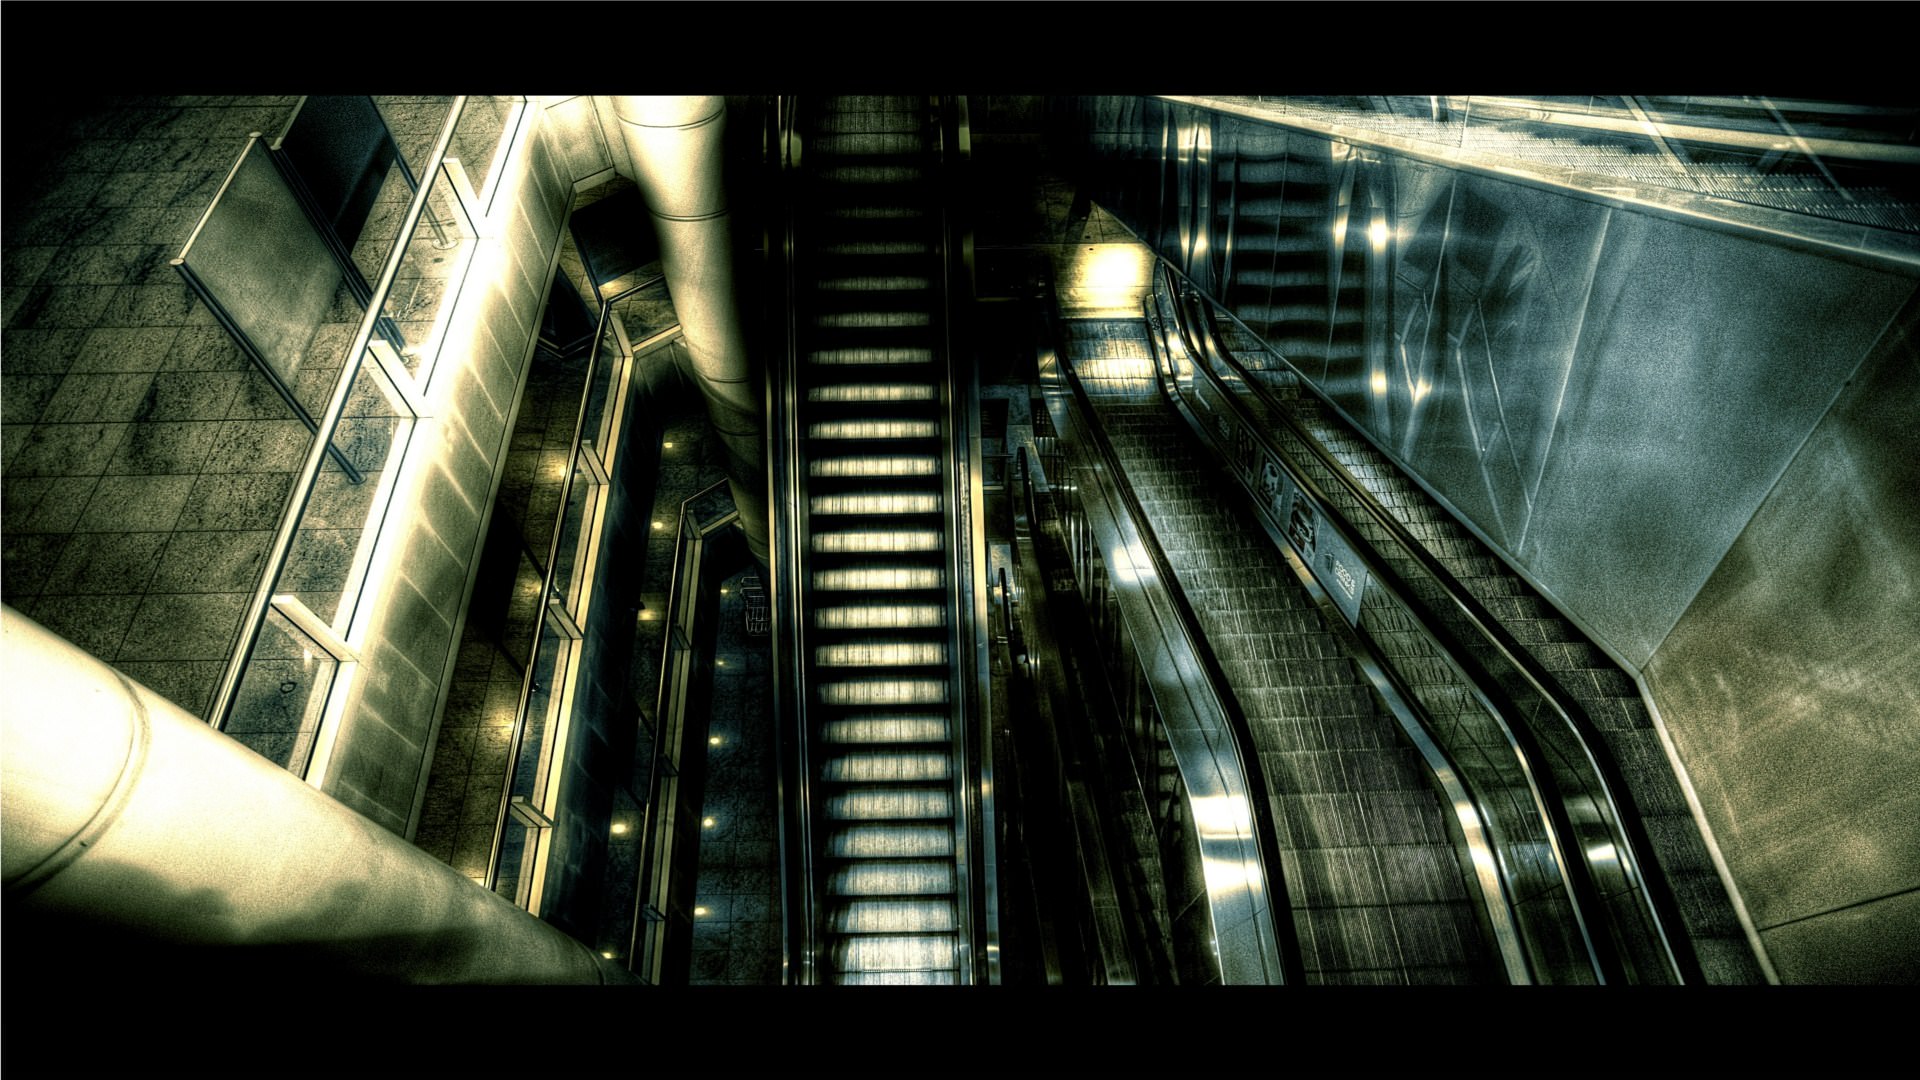 Escaliers Vison du futur